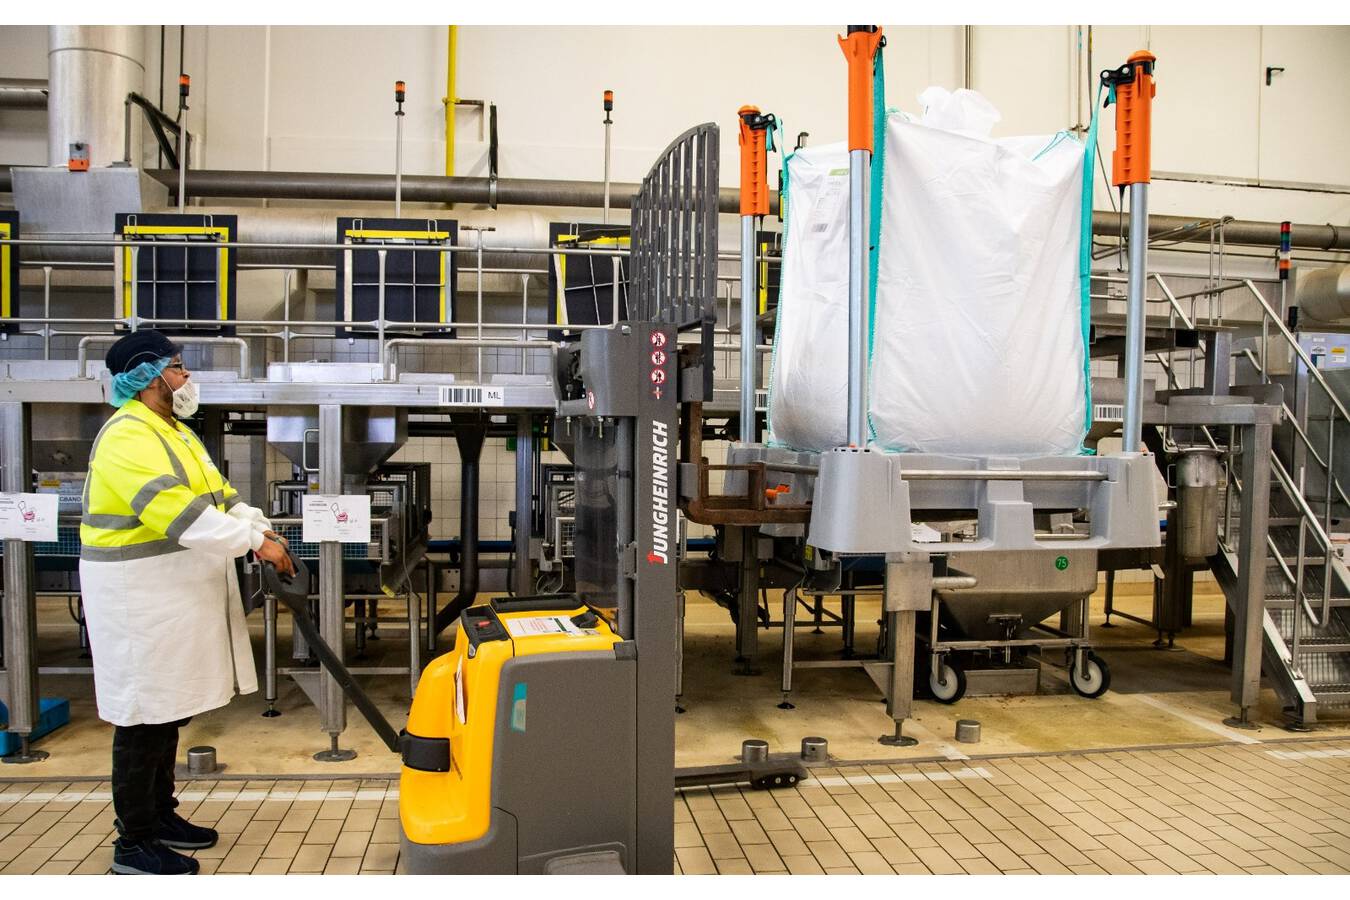 Das Neva-System hält Produktionslinien und Produkte sauber Das innovative Neva-Big-Bag-Handling-System bei Duyvis (PepsiCo) bedeutet effiziente Arbeitsvorbereitung, Platzersparnis, erhöhte Lebensmittelsicherheit und eine saubere Produktlinie.